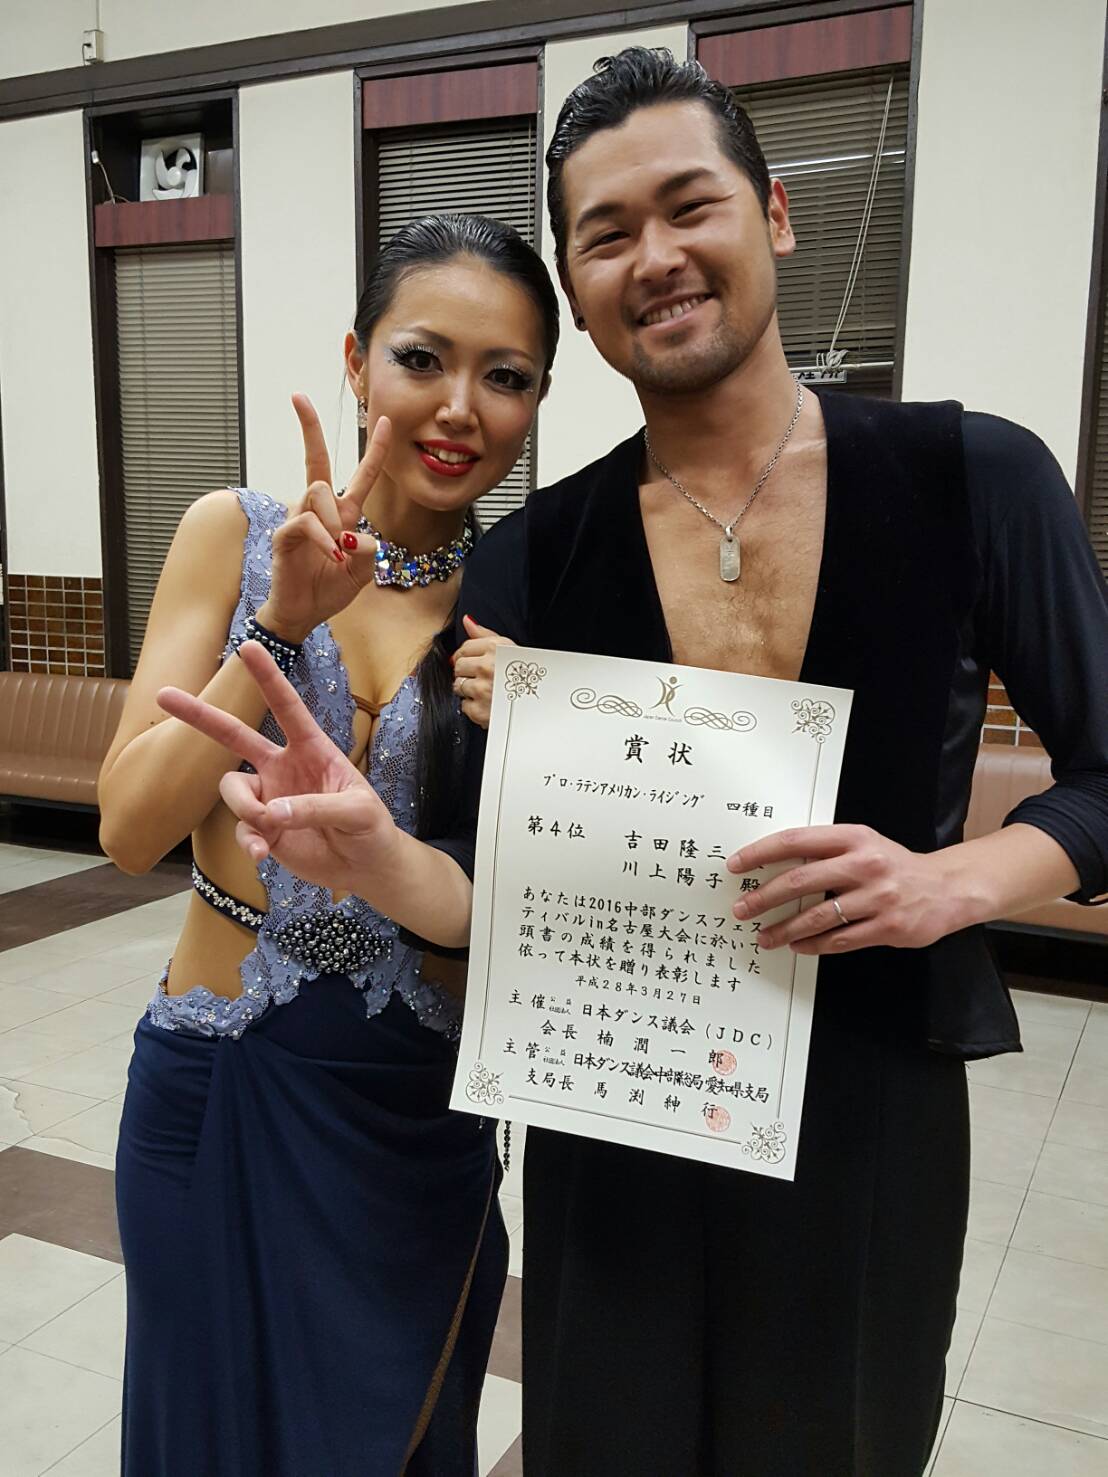 若者向け社交ダンス教室 ダンスサークルj 名古屋 ブログ レポート 3月 16